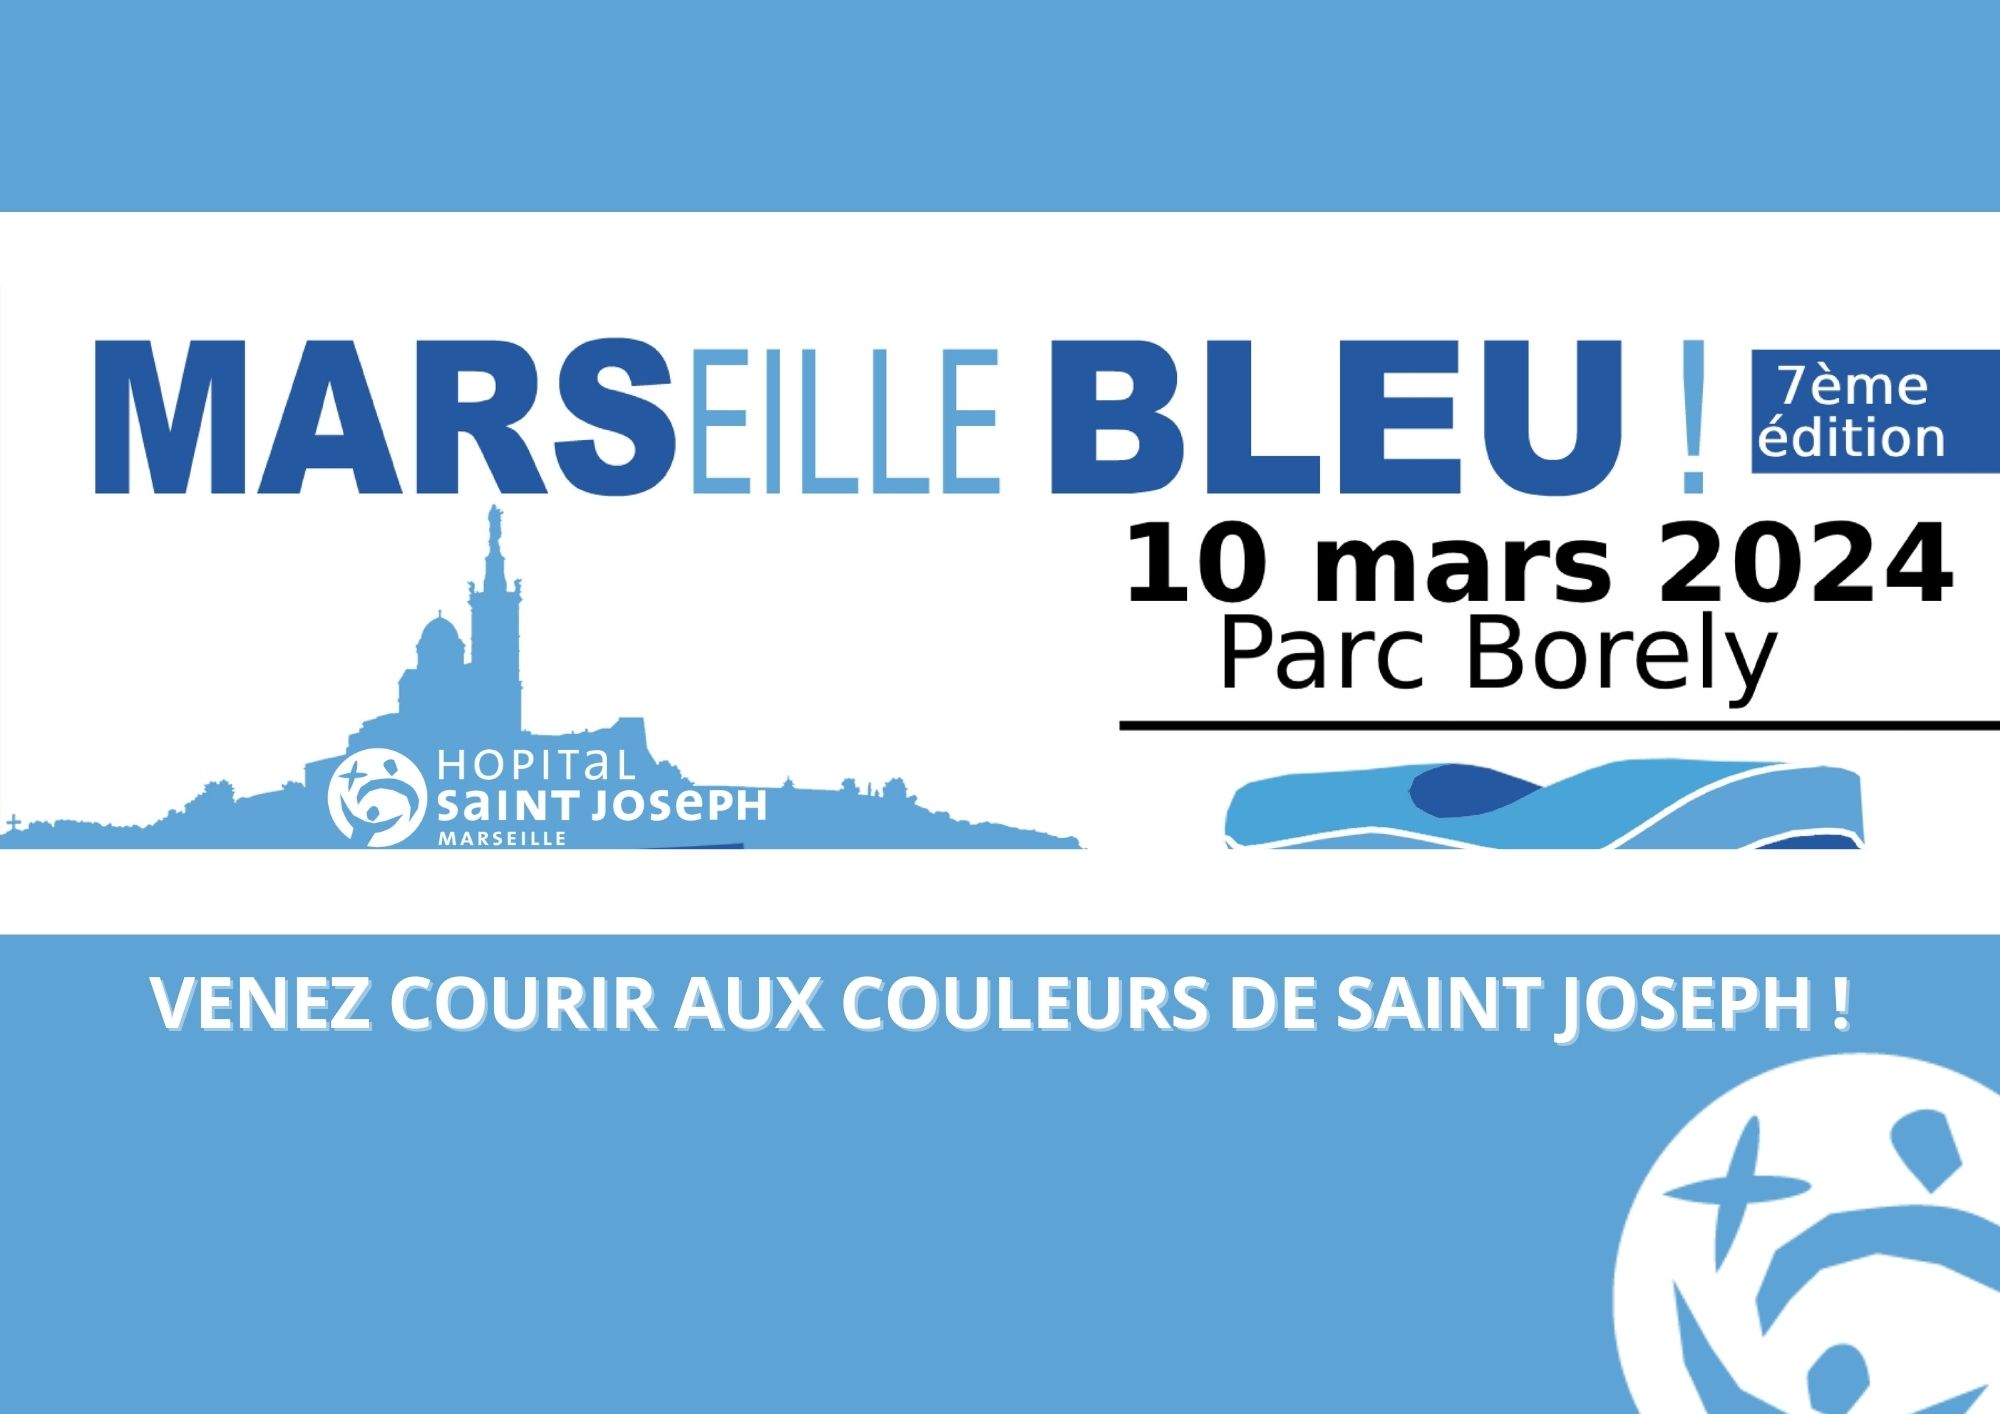 MARS BLEU (1) - Inscrivez-vous pour participer à MARSeille Bleu le 10 mars prochain